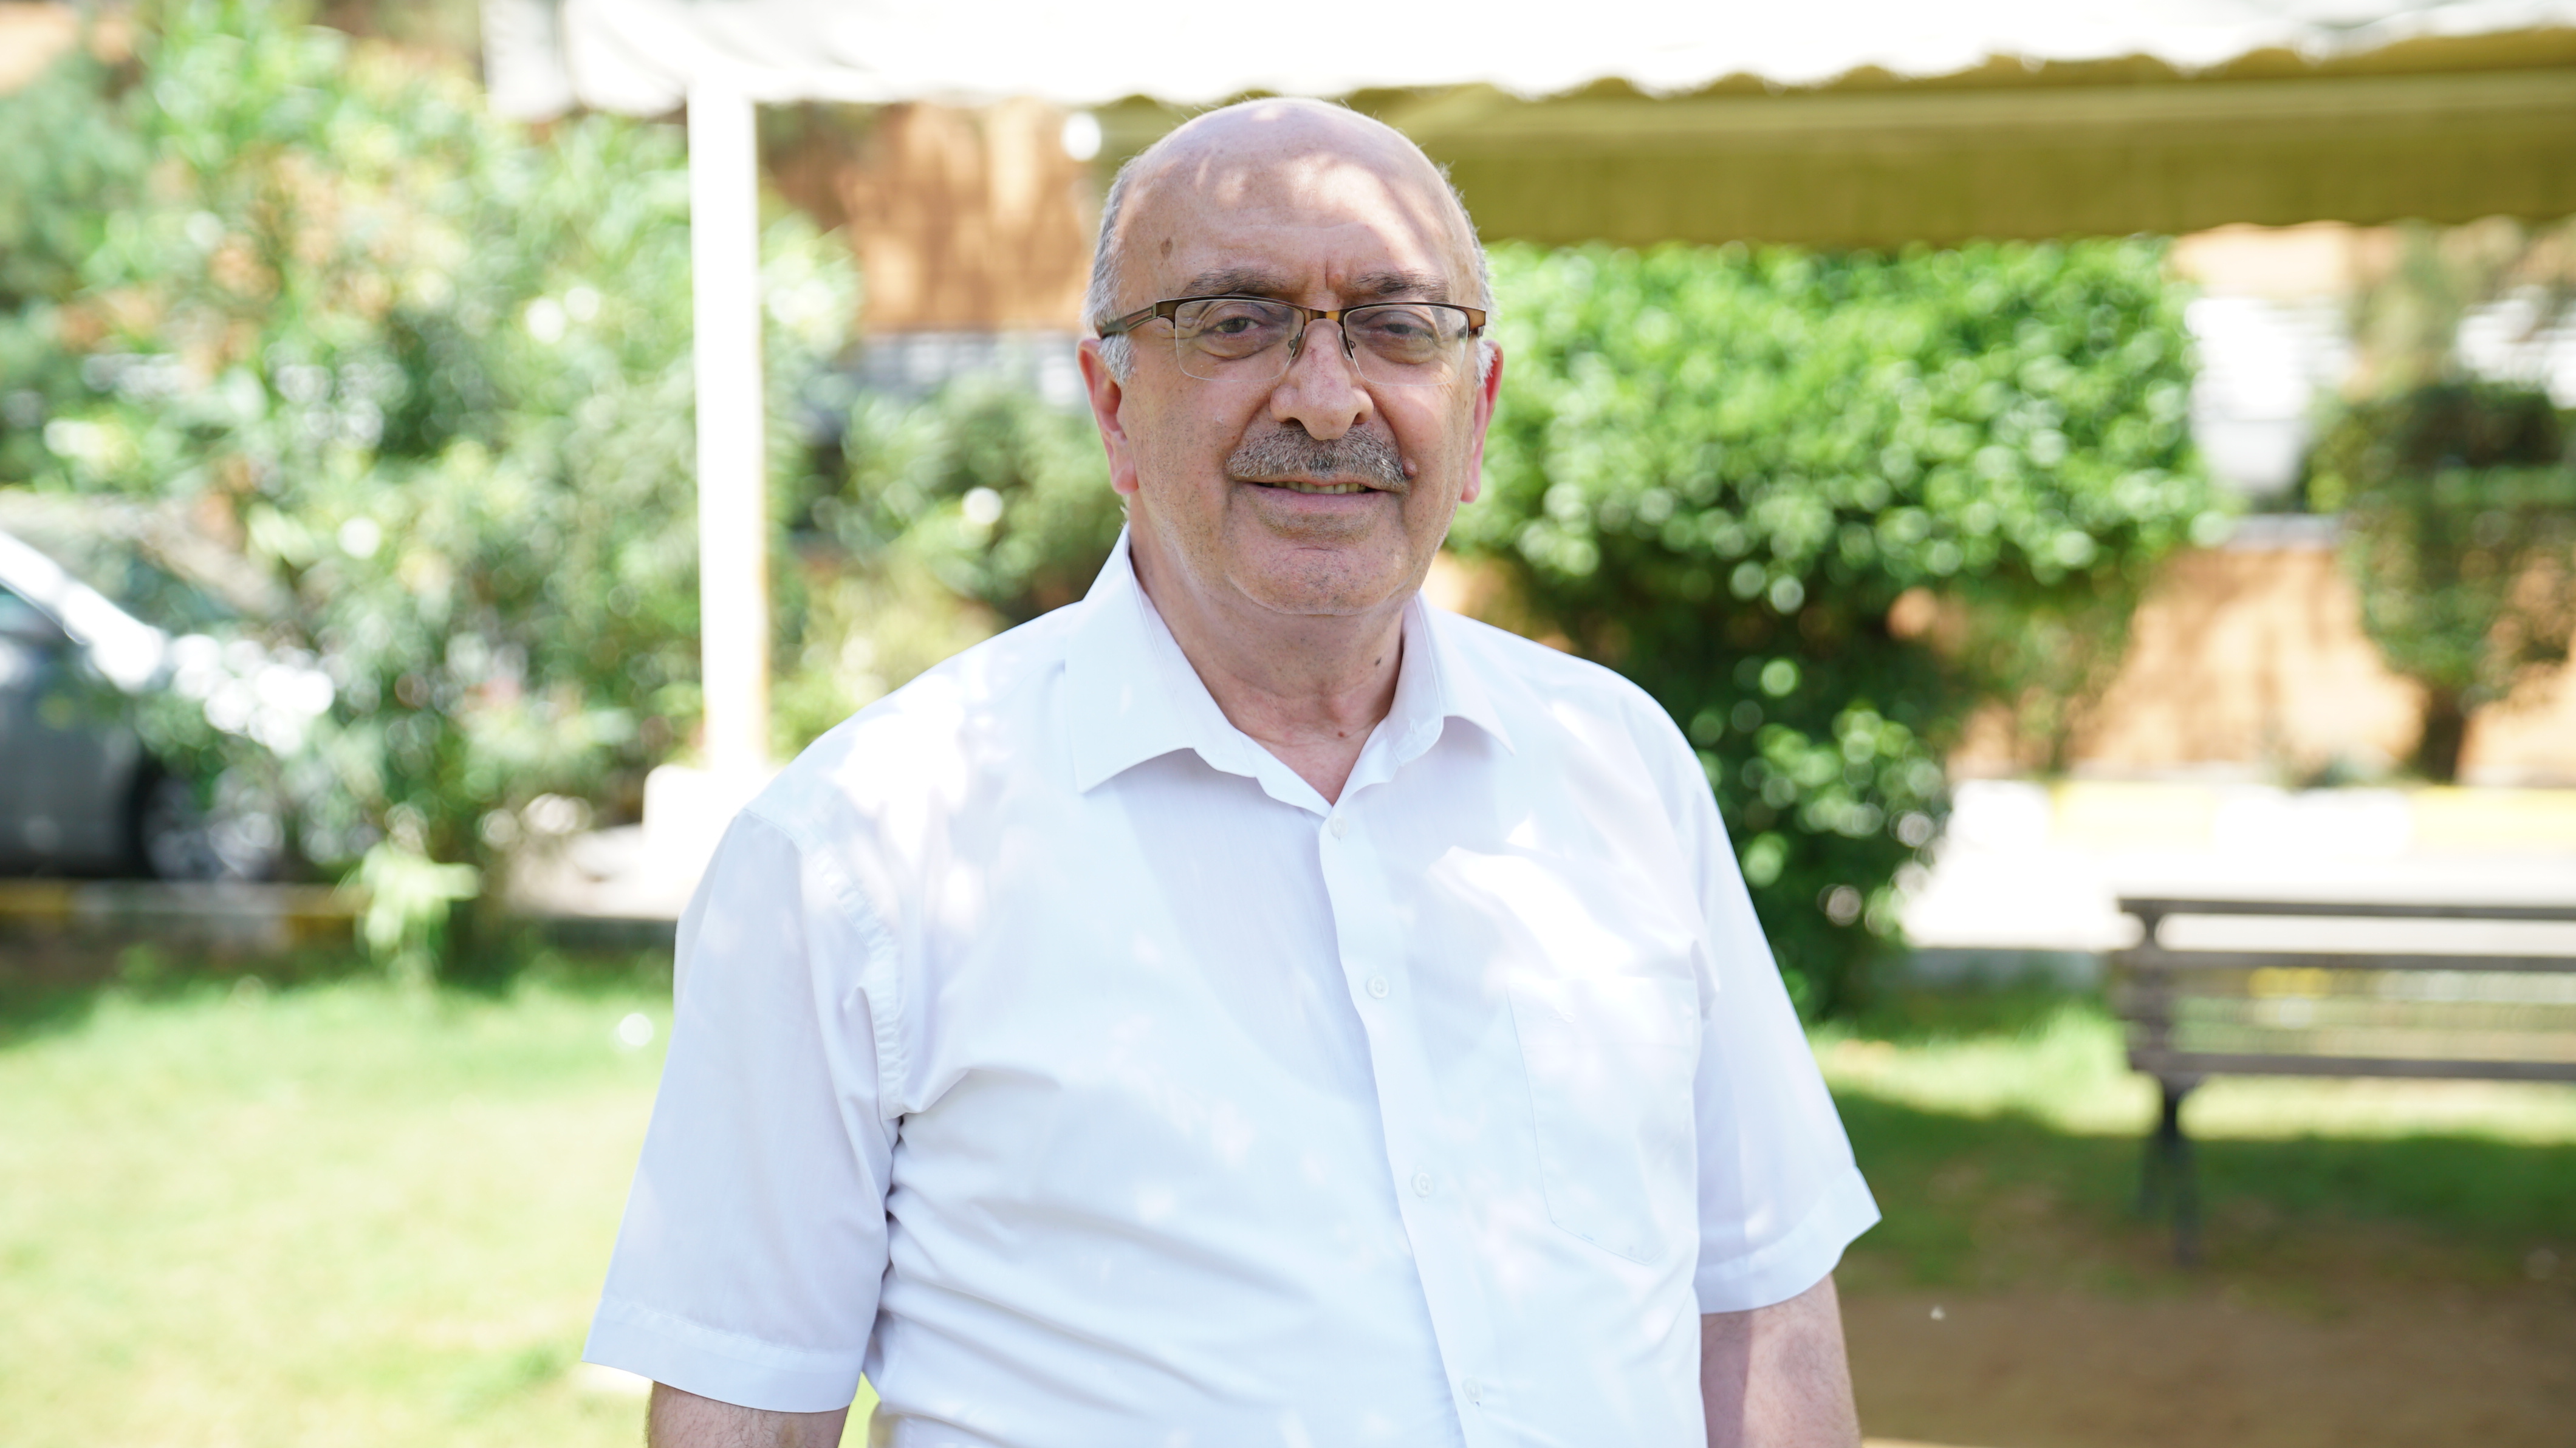 Endüstri Mühendisliği Bölüm Başkanımız Prof. Dr. Sibkat Kaçtıoğlu’na Sorduk 